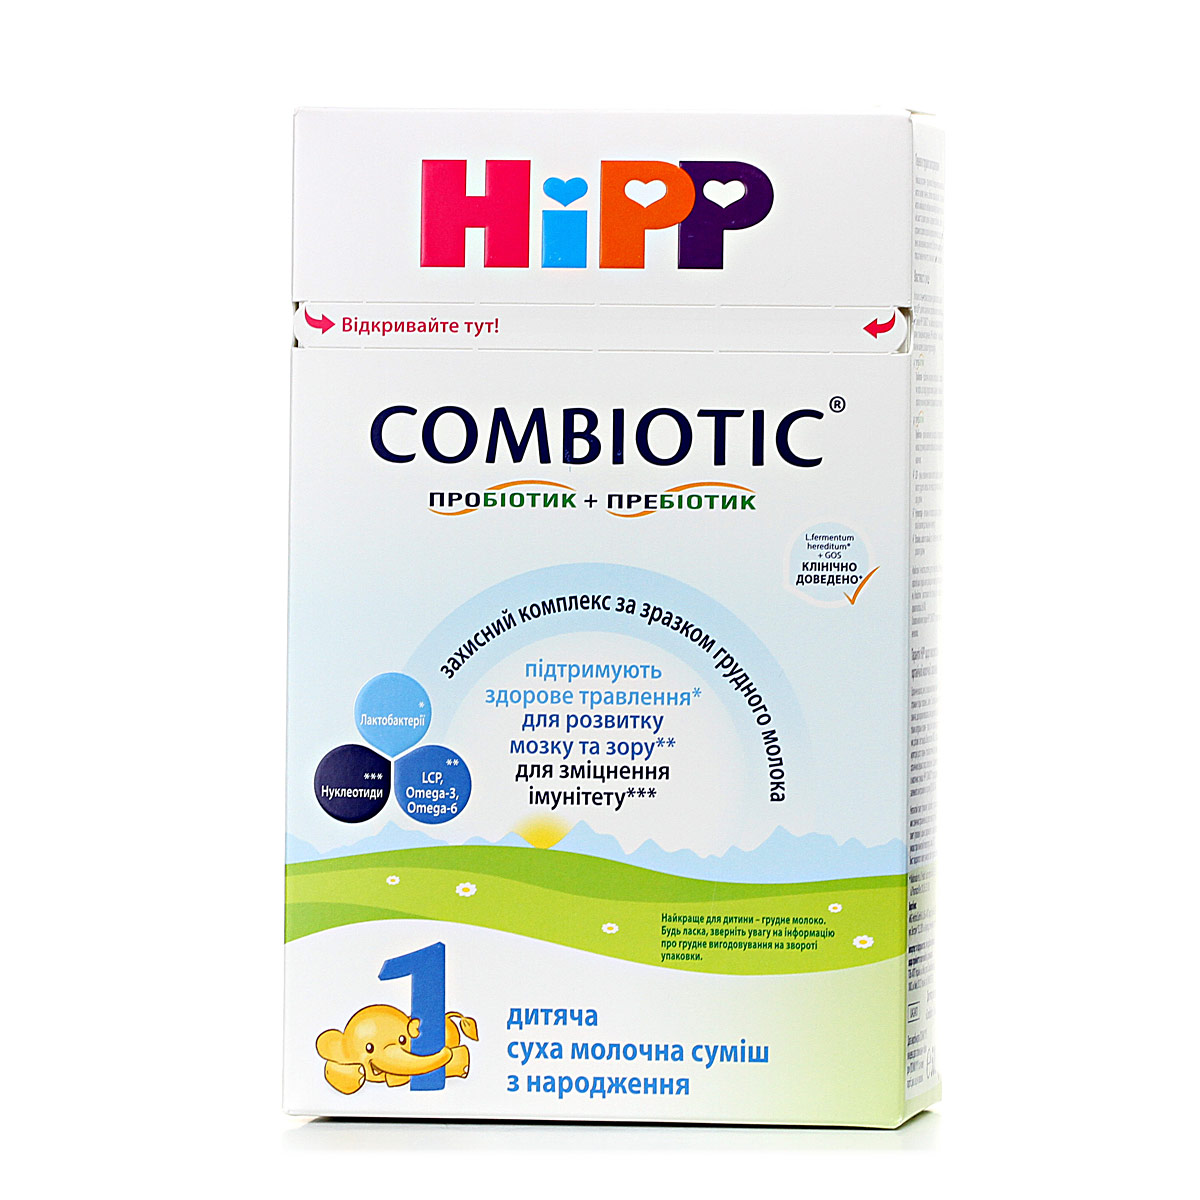 Дитяча суха молочна суміш HiPP "COMBIOTIC®" 1, 500 г - фото 5 | Интернет-магазин Shop HiPP